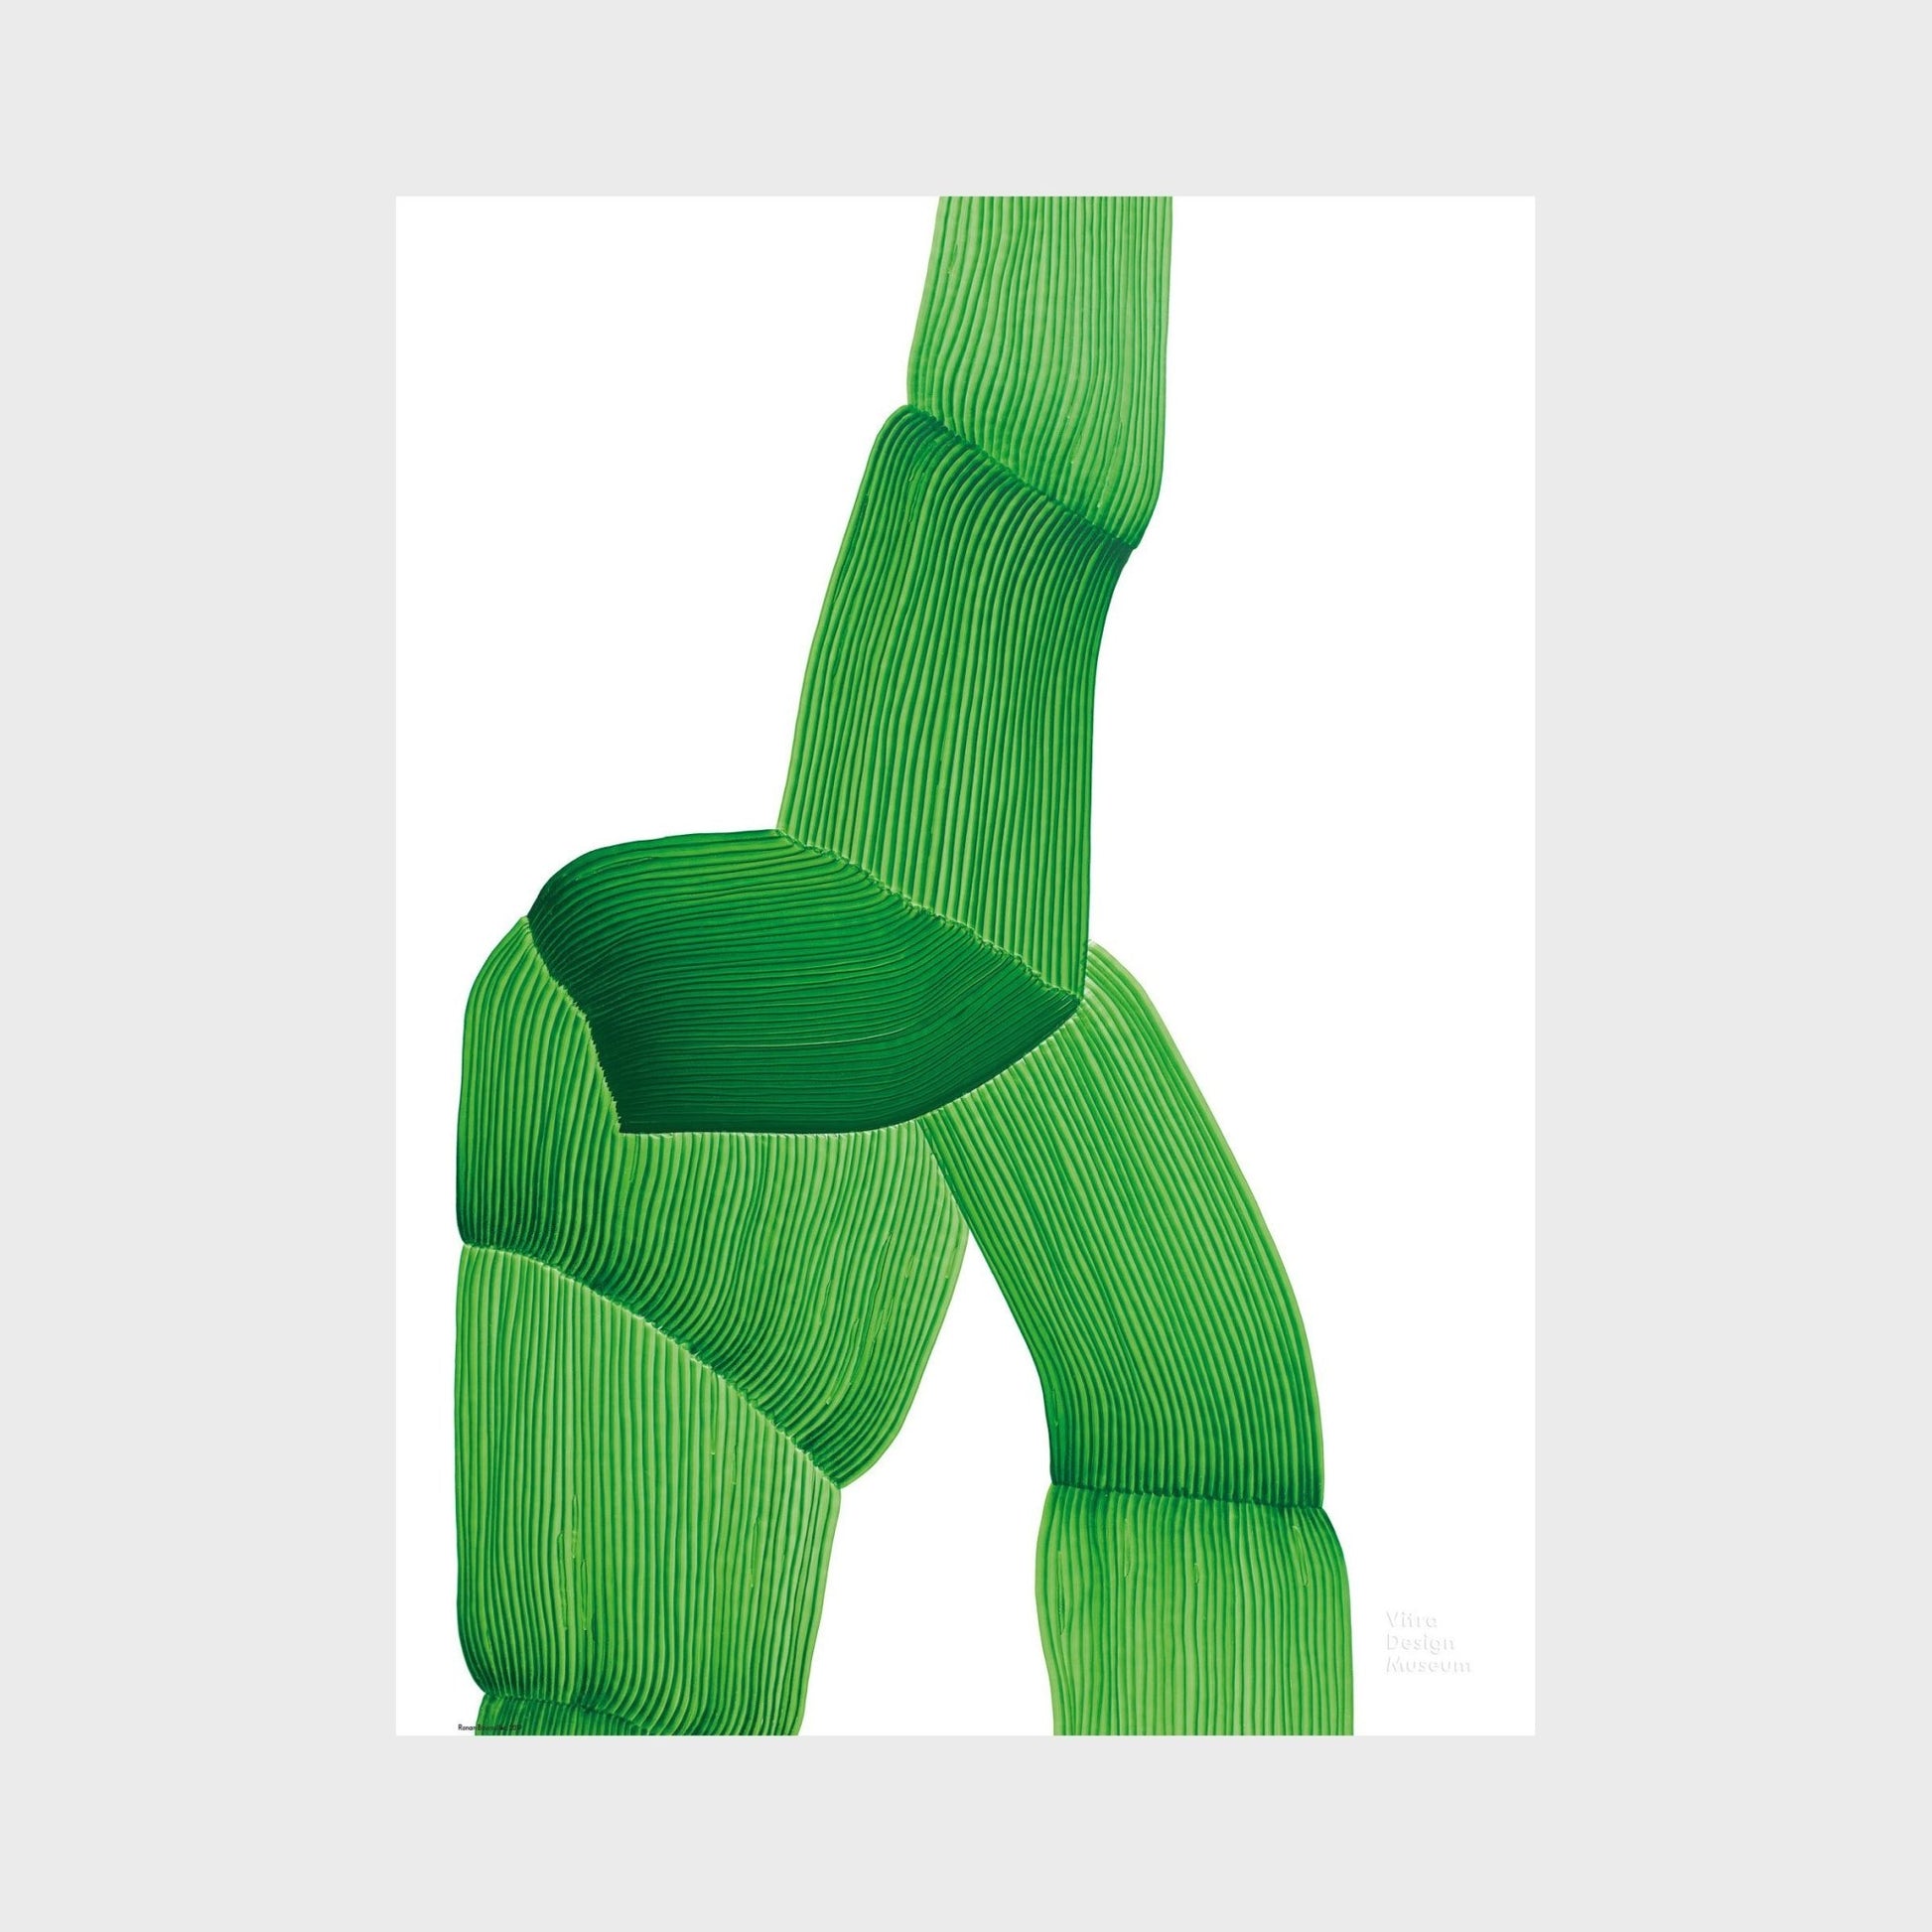 Vitra Poster Ronan Bouroullec, Drawing 2018, Green-Goodnotes.no